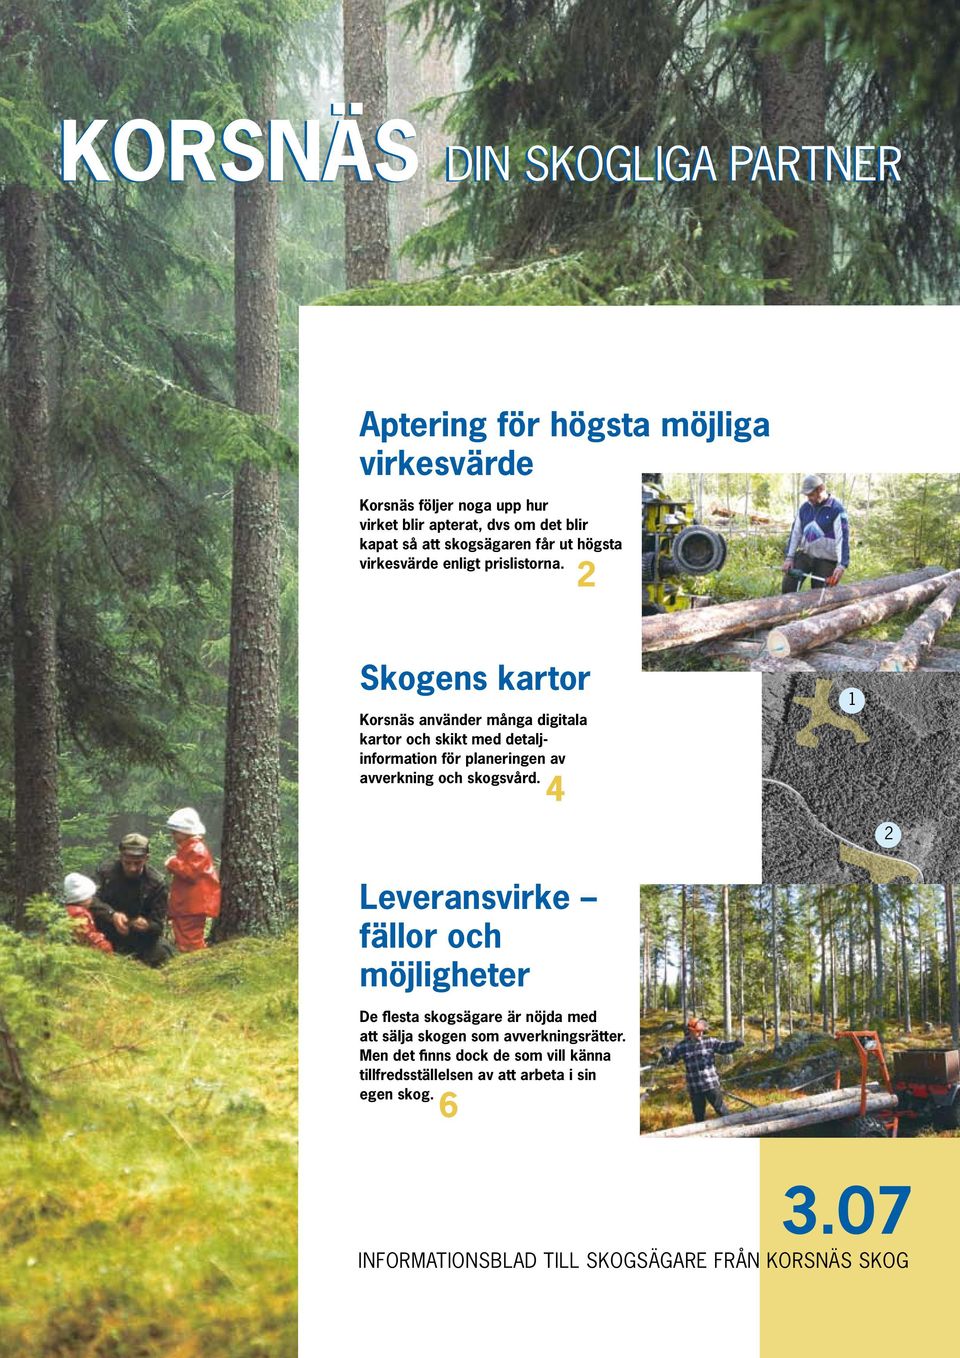 2 Skogens kartor Korsnäs använder många digitala kartor och skikt med detaljinformation för planeringen av avverkning och skogsvård.